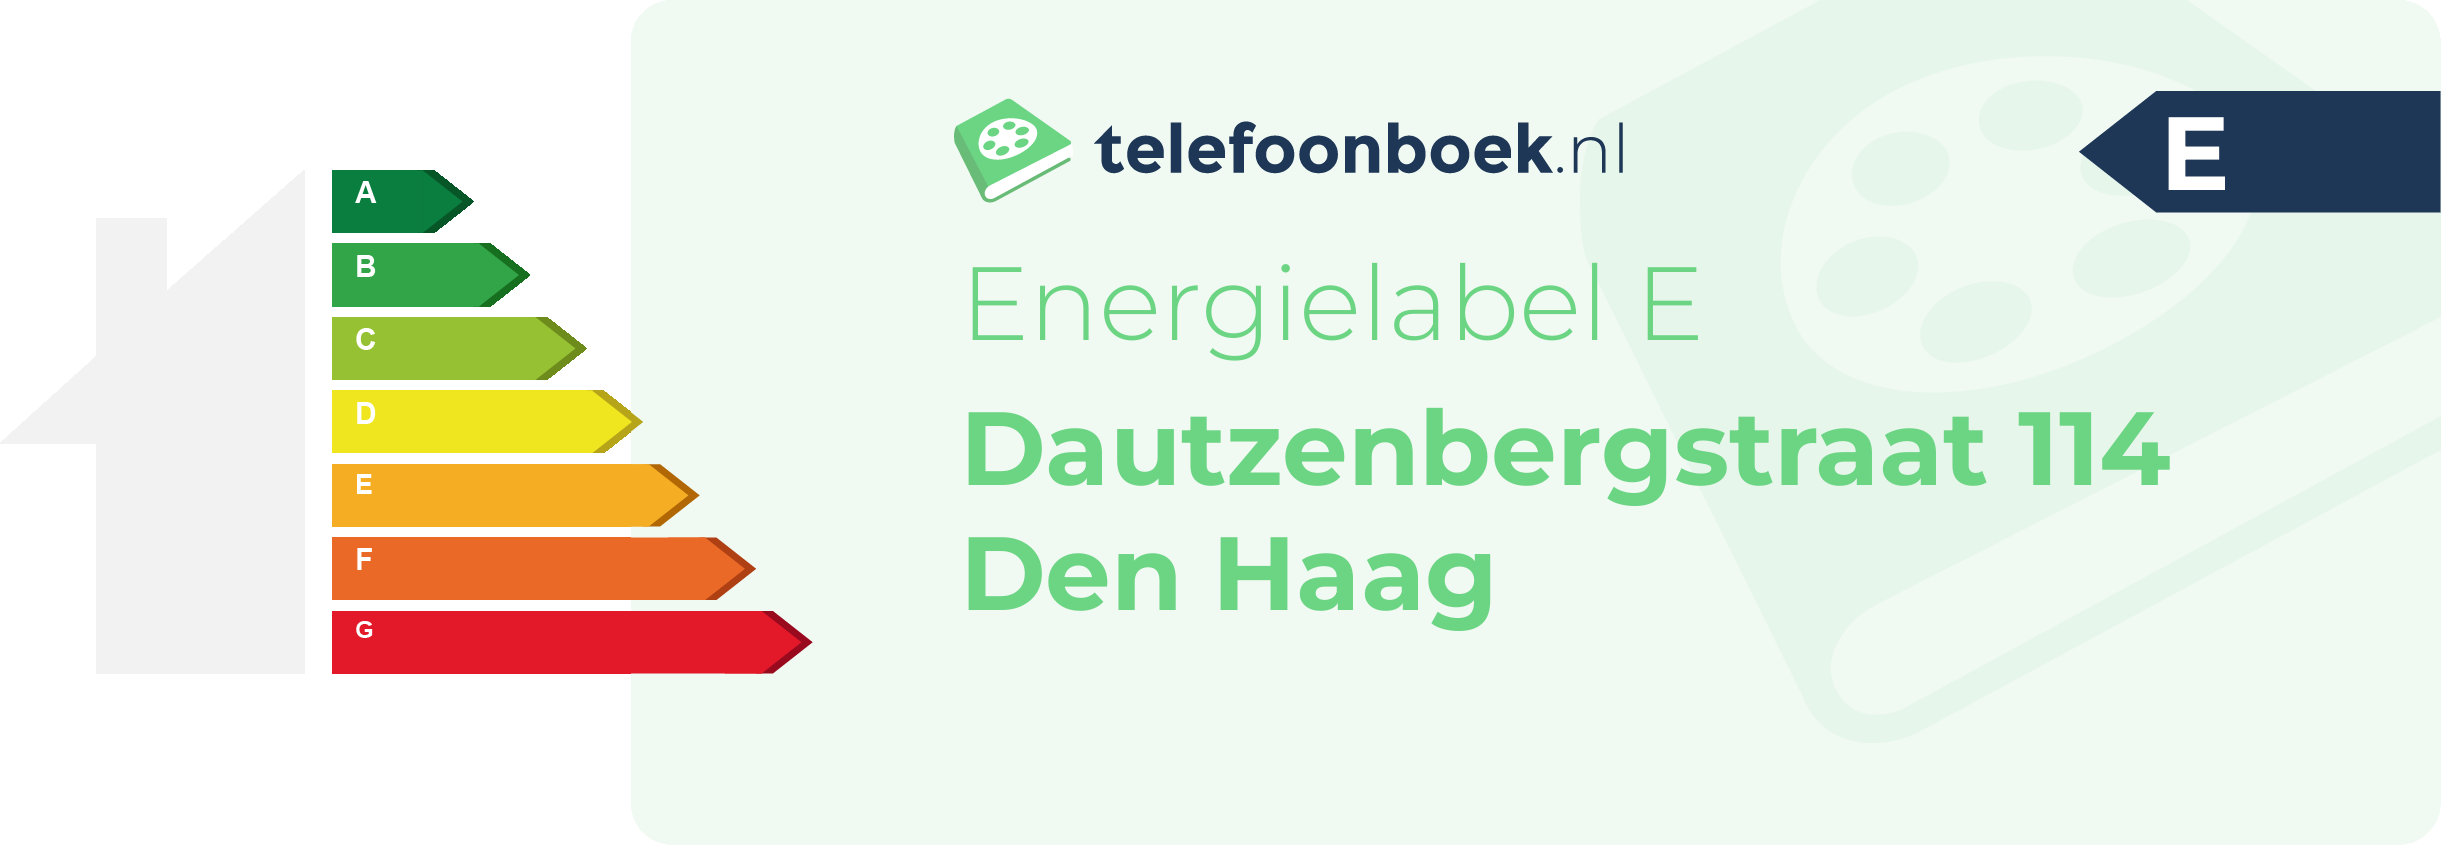 Energielabel Dautzenbergstraat 114 Den Haag